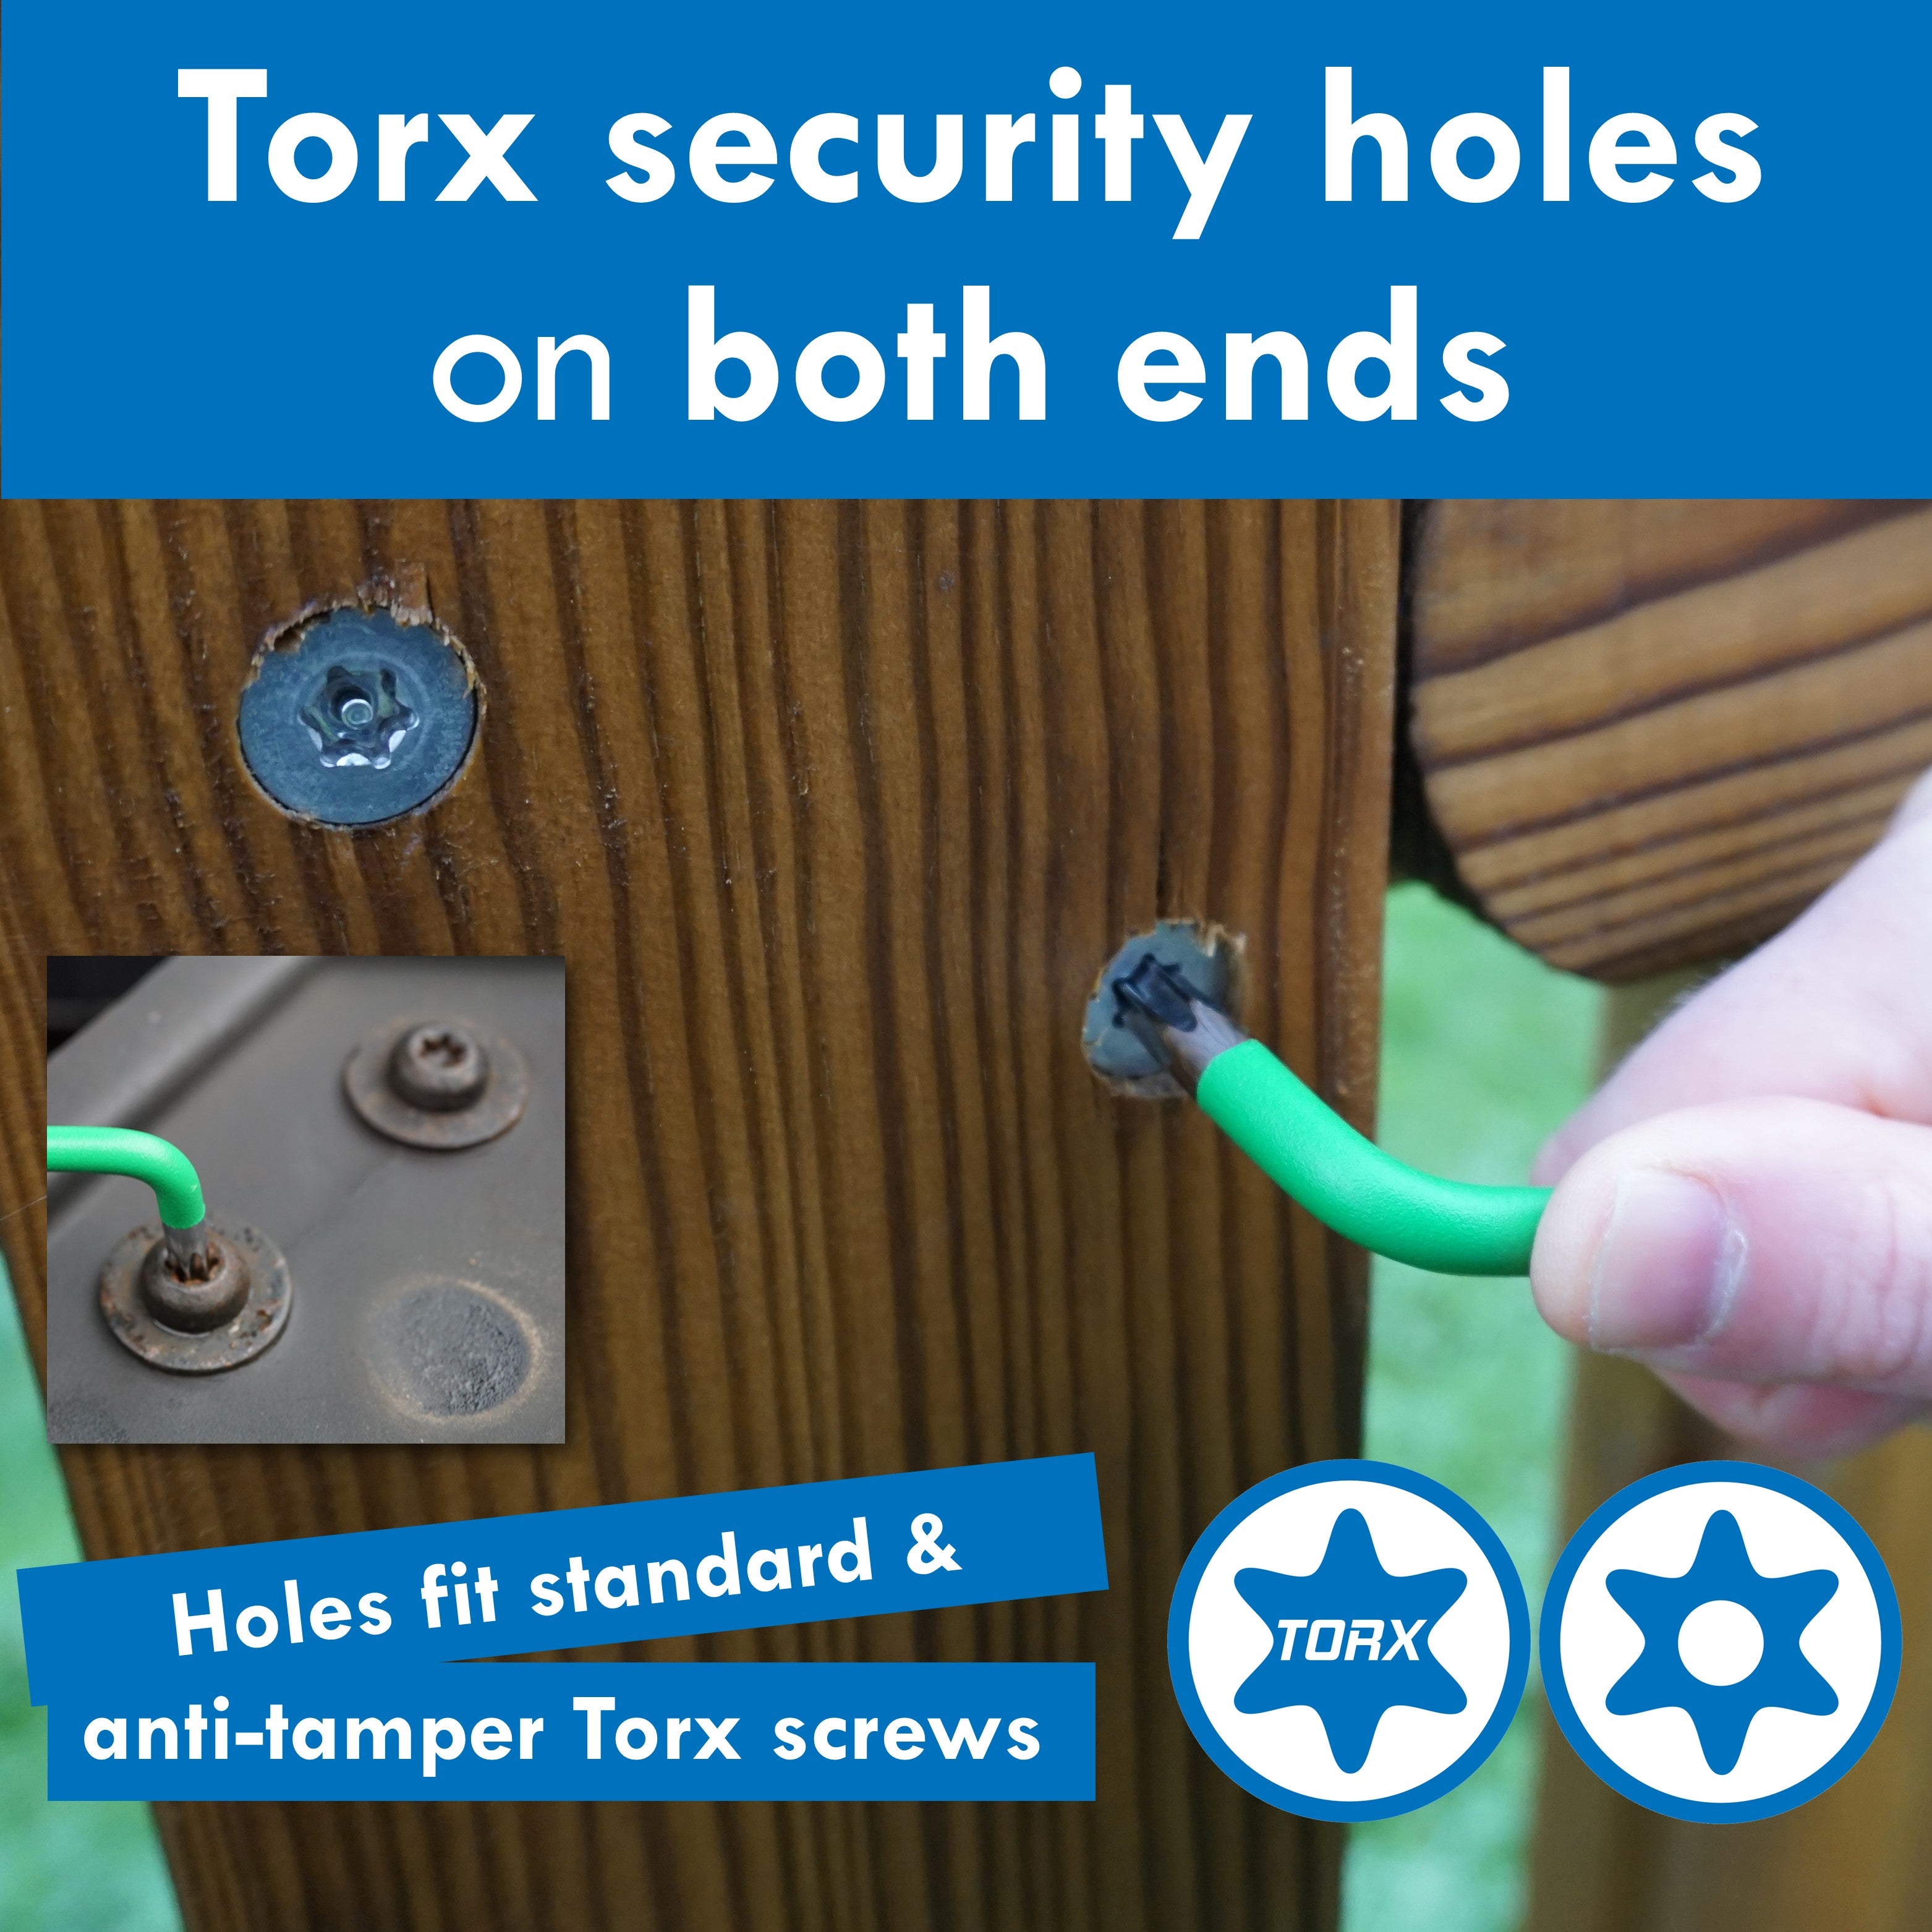 HemBorta Torx keys fit standard and tamper proof Torx screws